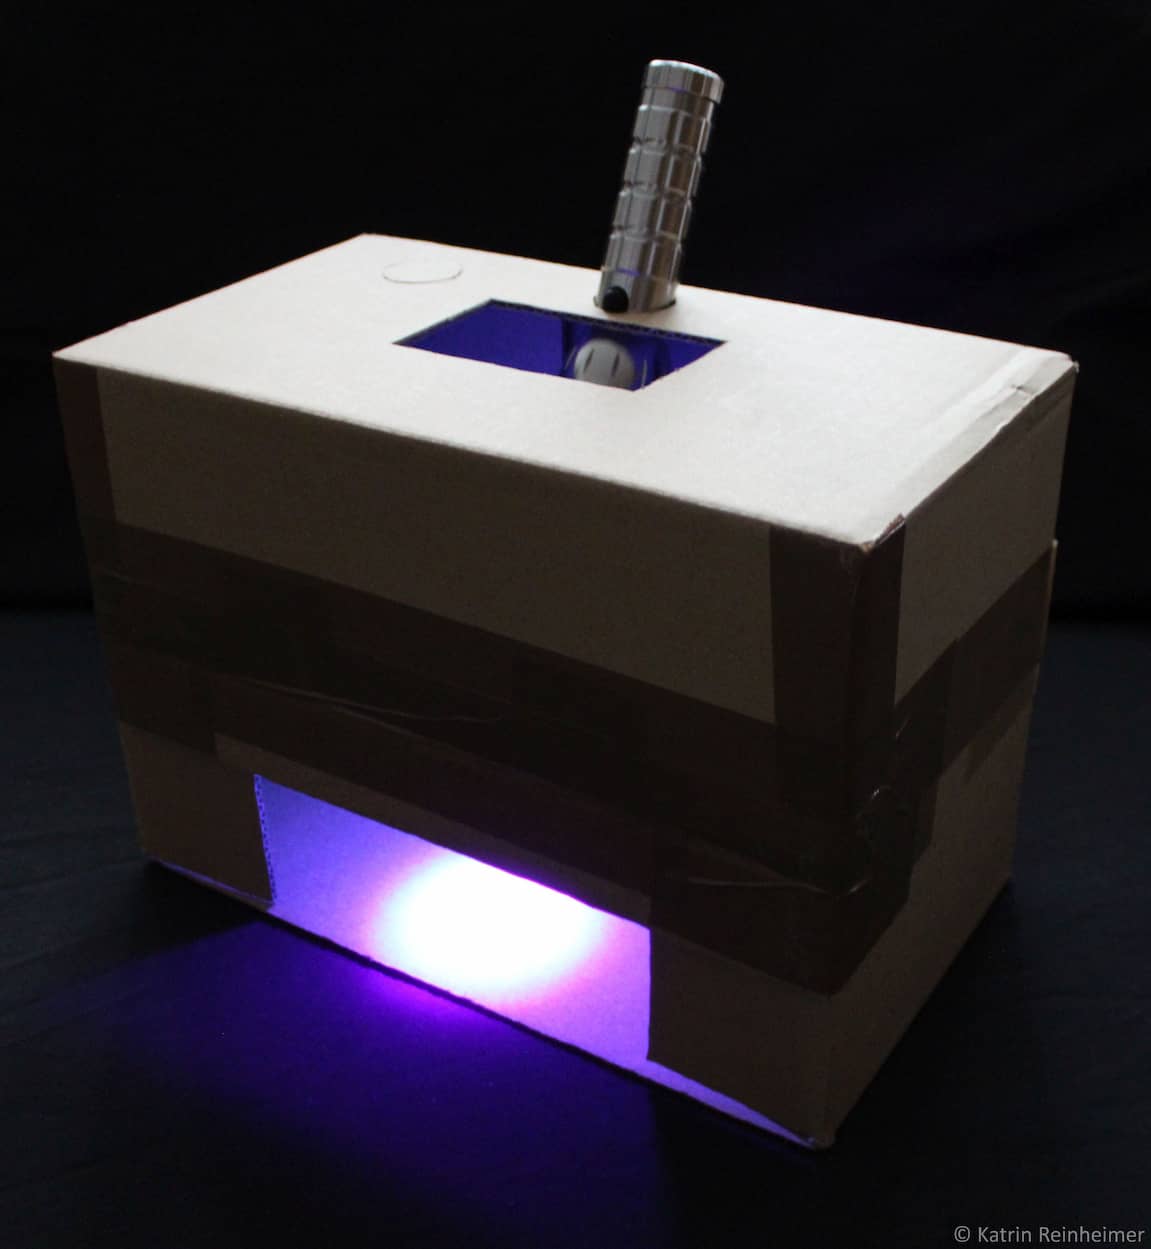 Die UV-Box im Dunkeln mit eingeschalteter UV-Lampe.